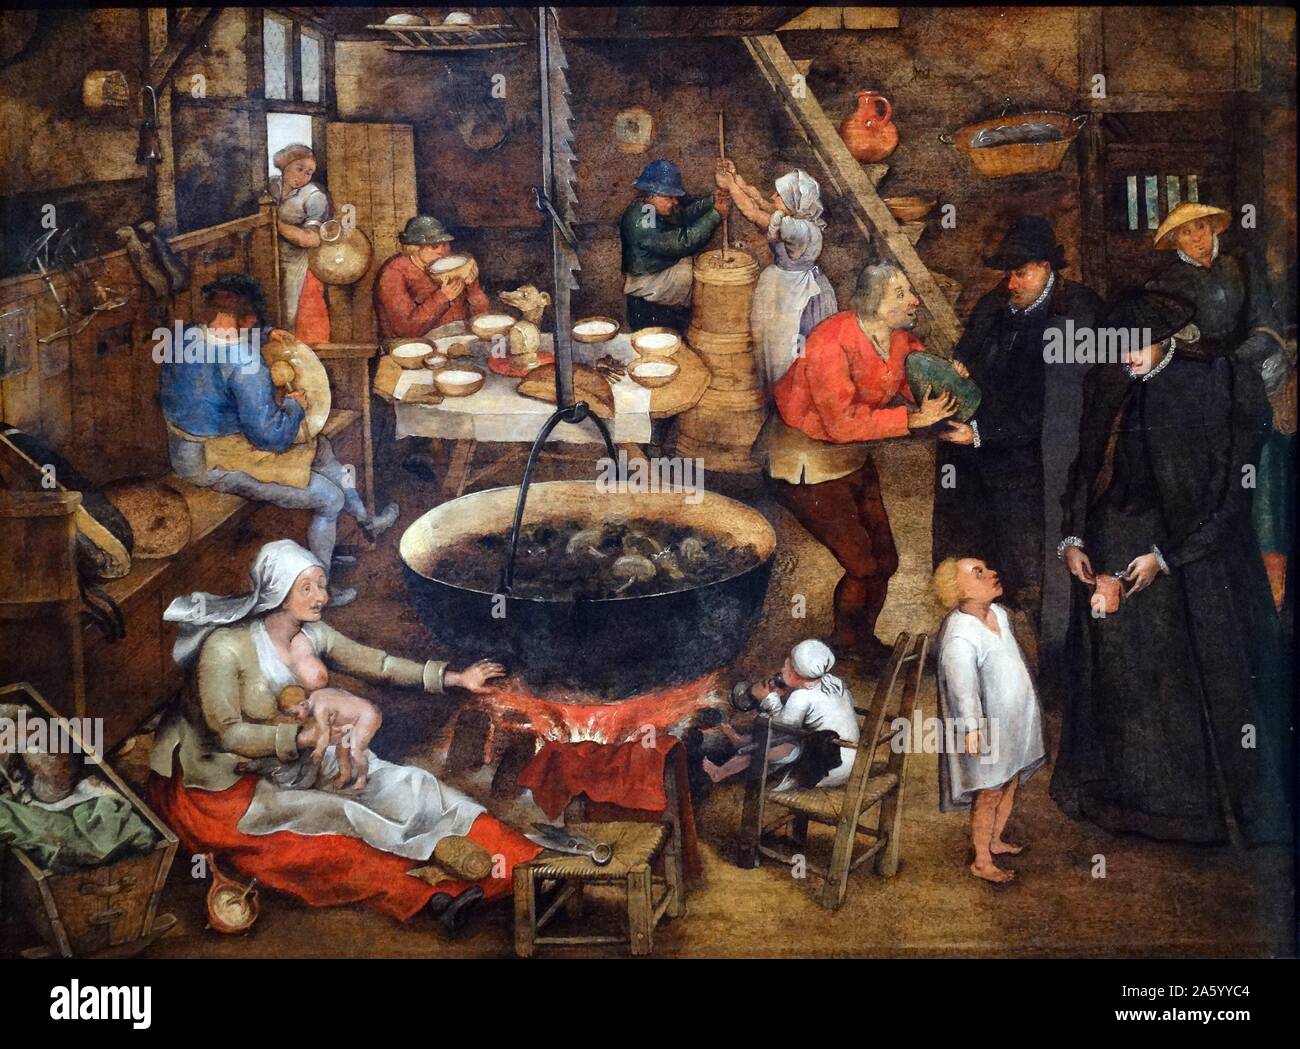 La visite du parrain par Pieter Brueghel le Jeune 1565-1638. Huile sur panneau Banque D'Images